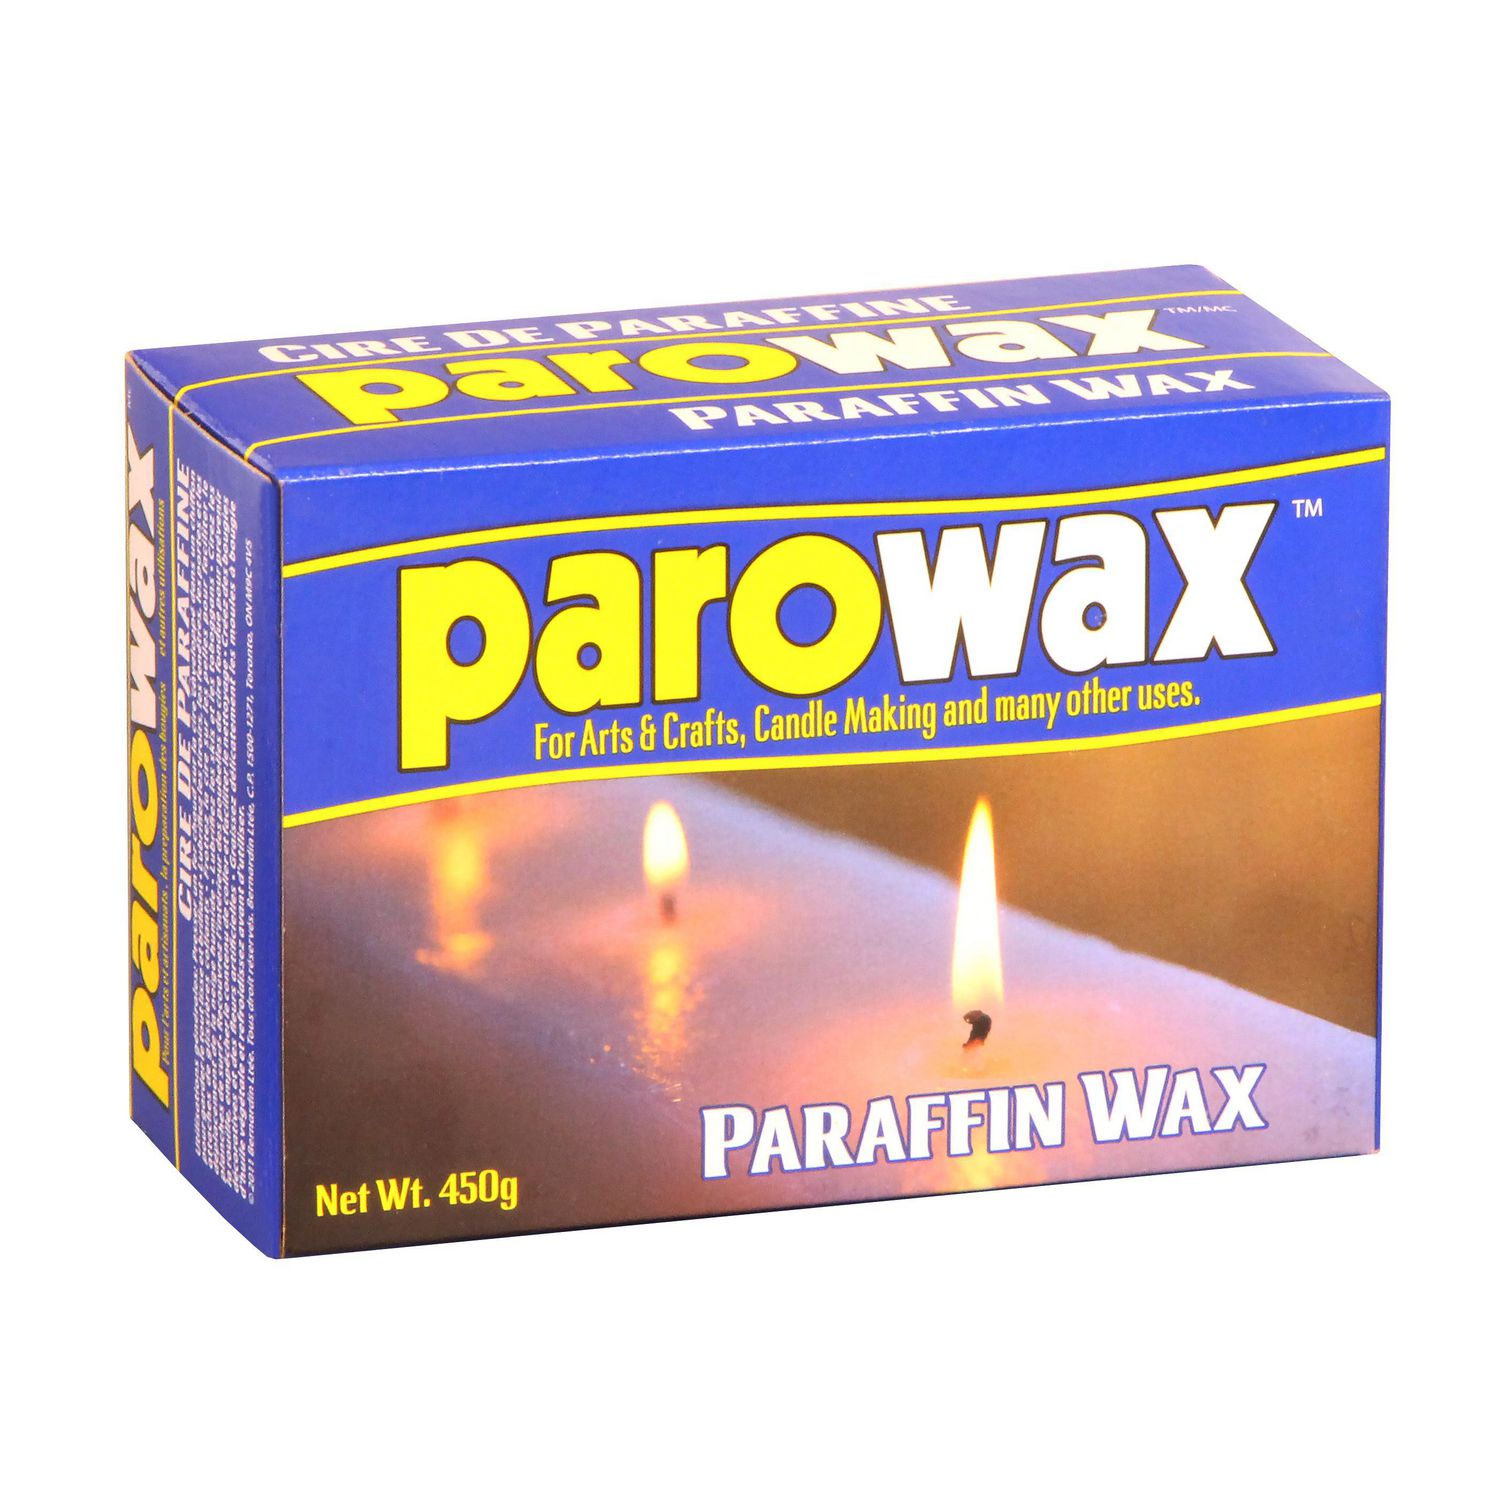 where to find paraffin wax in walmart